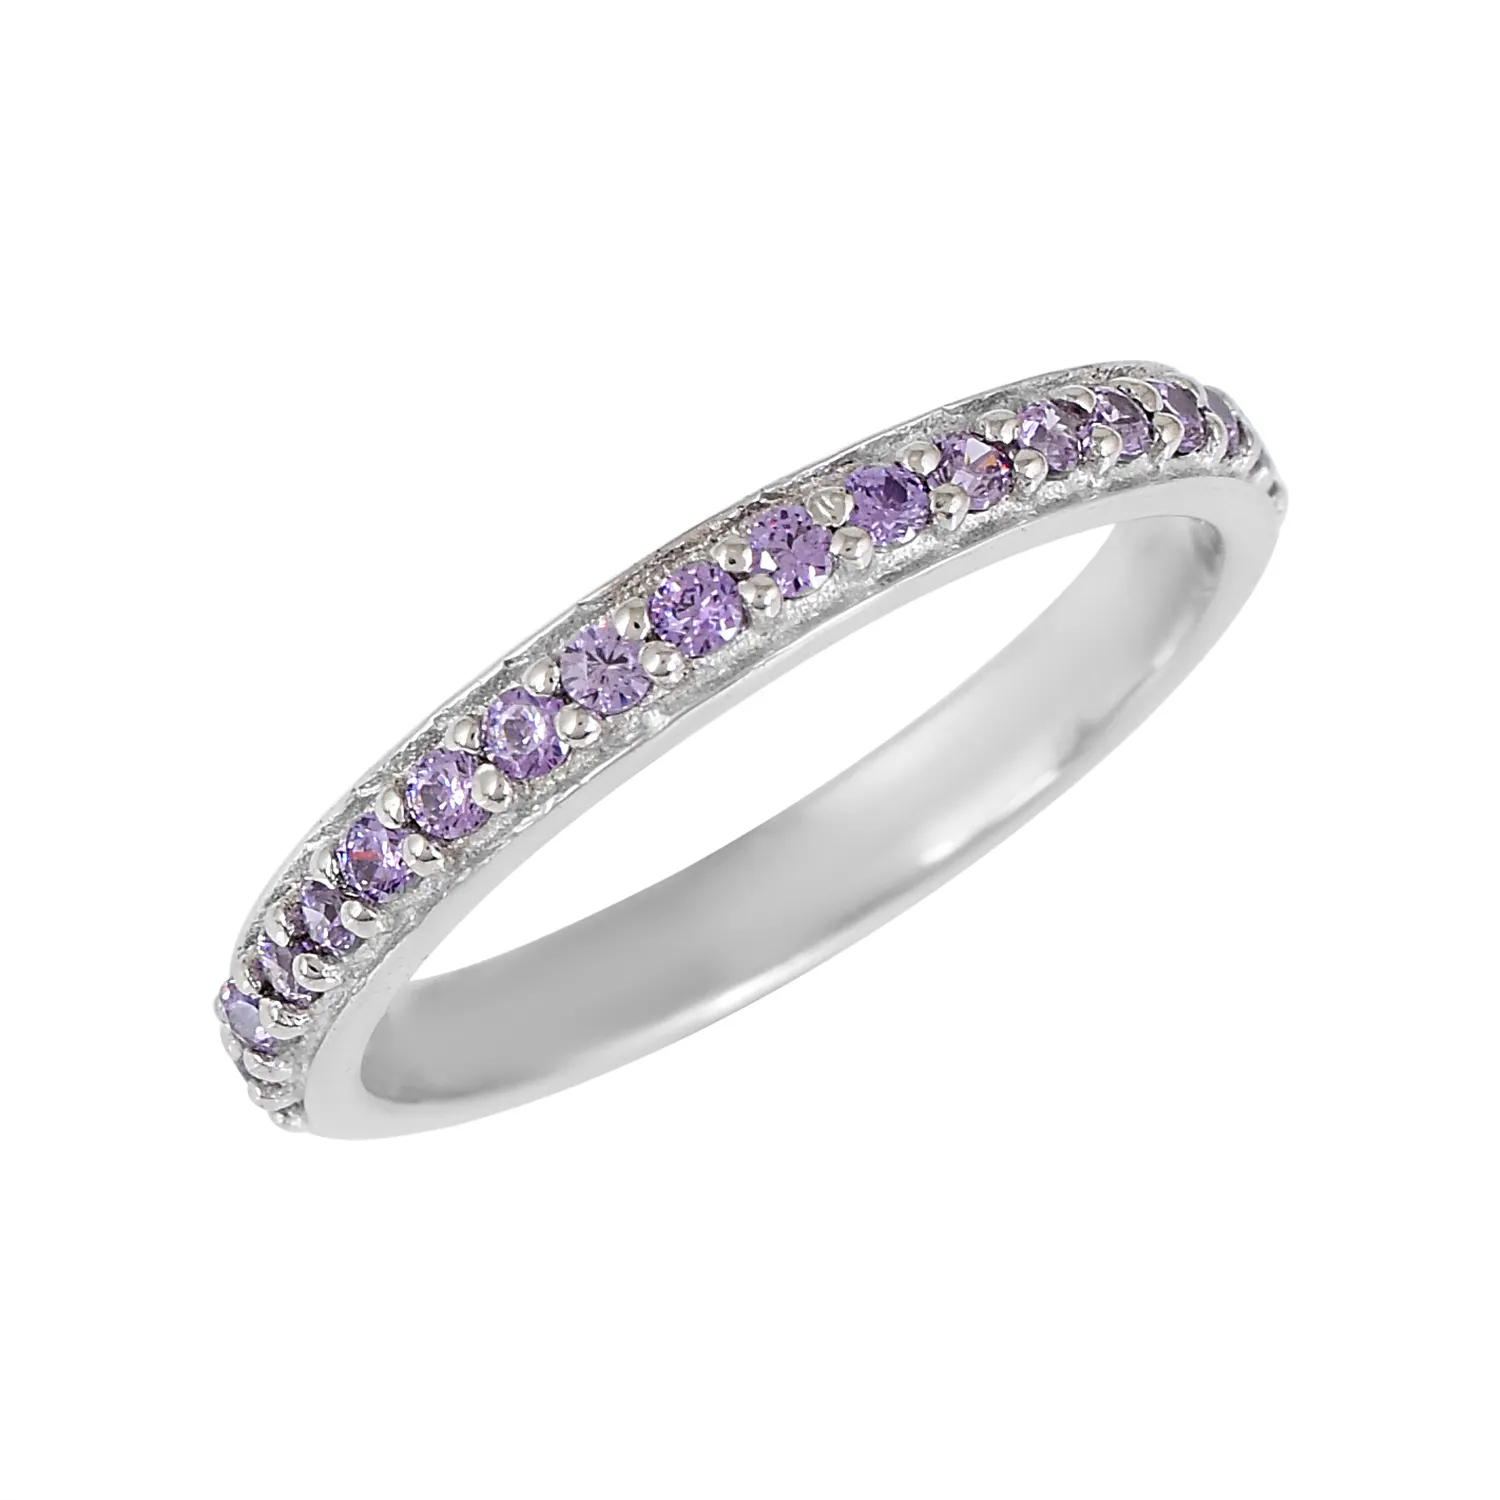 Piedra preciosa de amatista púrpura Natural, banda de compromiso de media eternidad, anillo delicado de Plata de Ley 925 pura, joyería fina